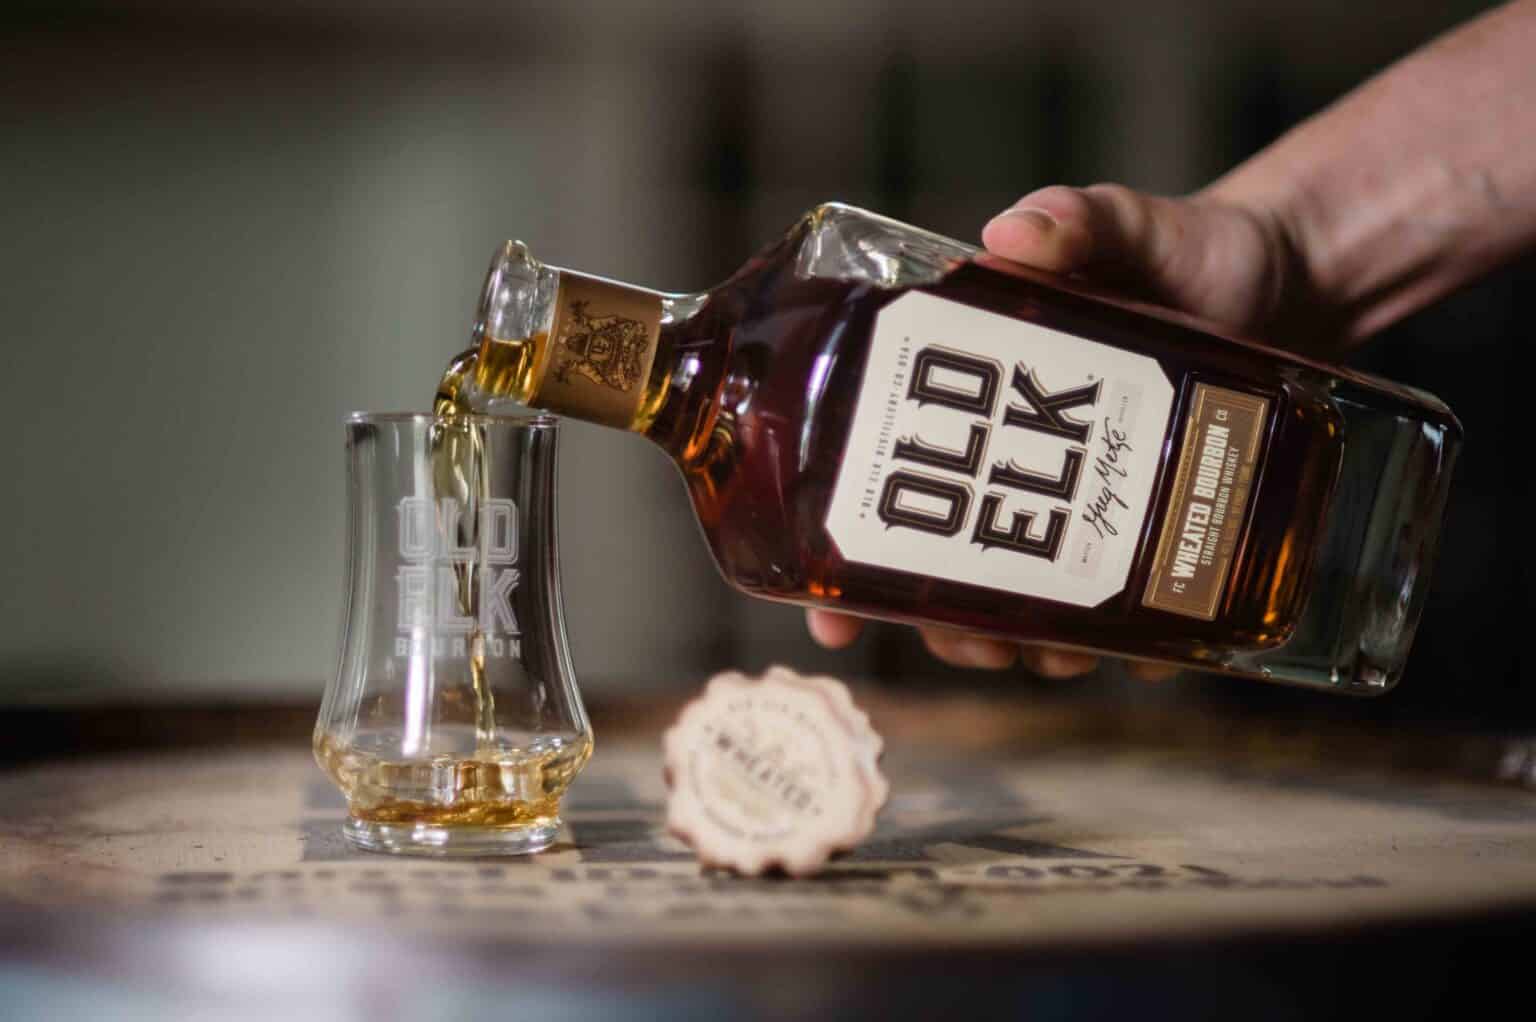 old elk bourbon